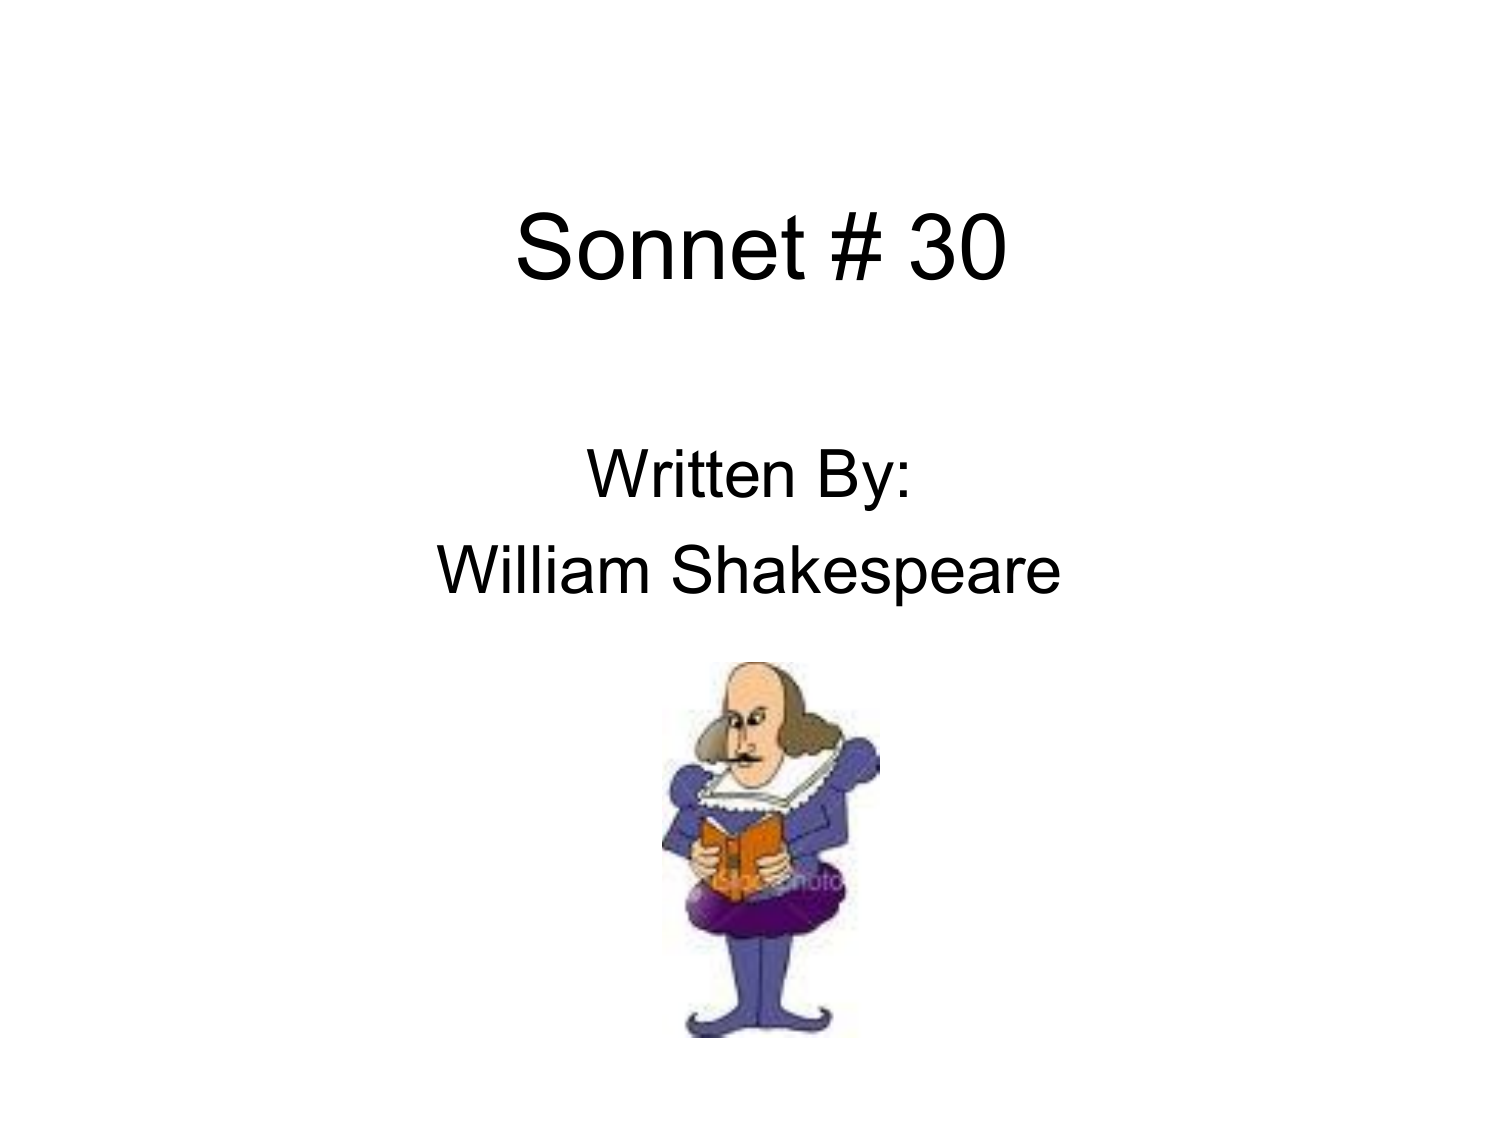 shakespeare sonnet 30